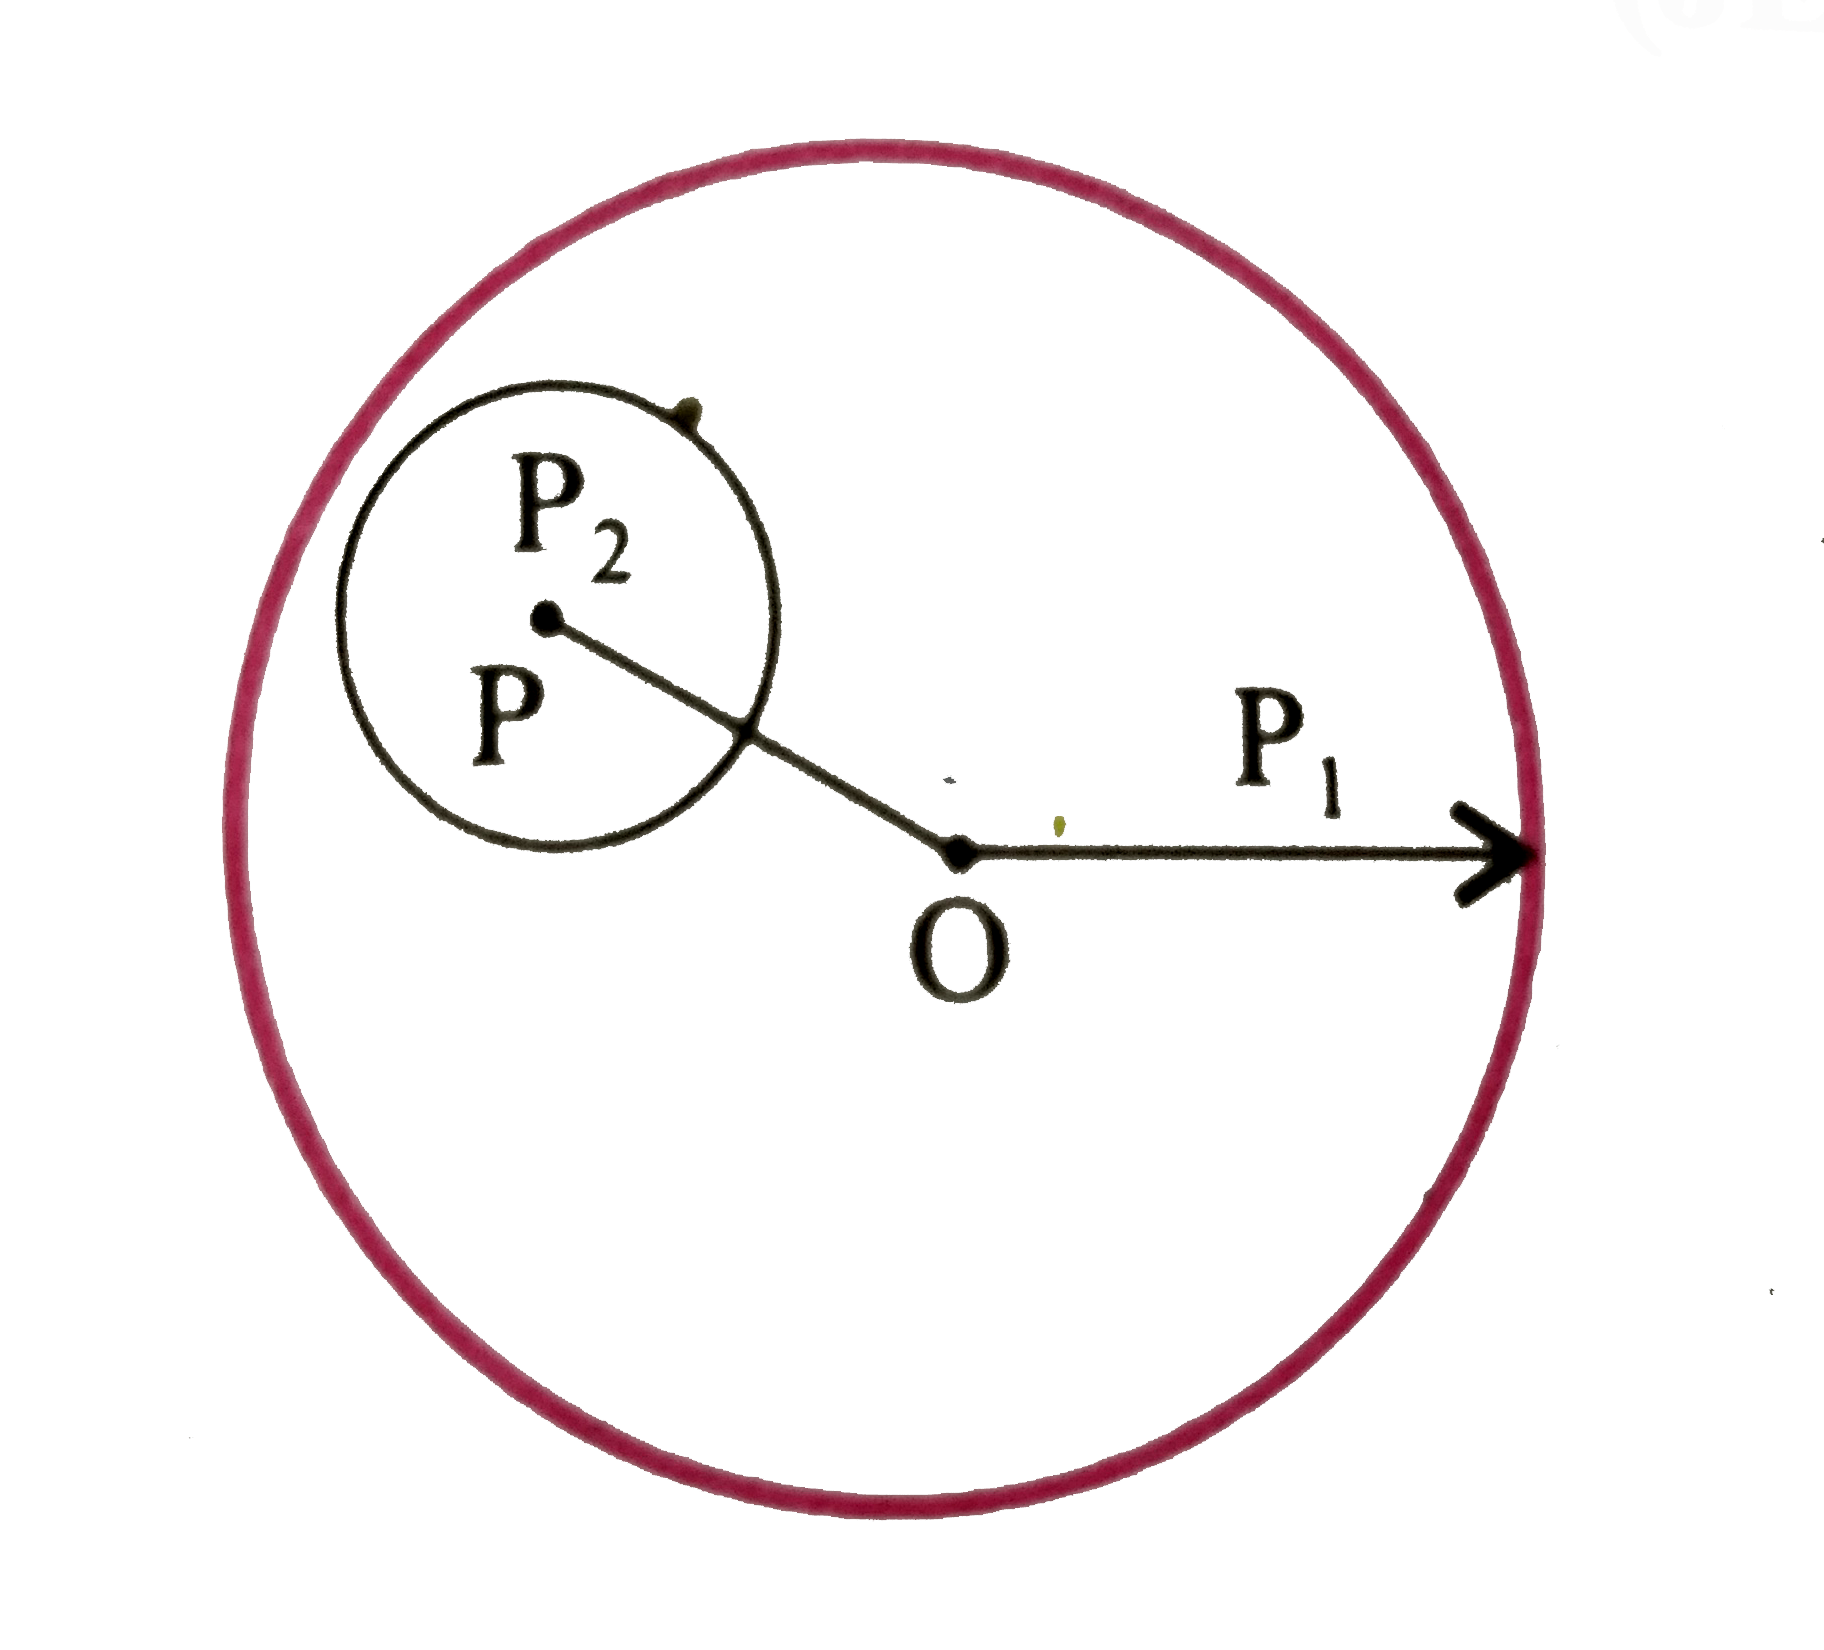 R(1) त्रिज्या के गोले पर केंद्र O के सापेक्ष एकसमान आवेश वितरित है। R(2) त्रिज्या की गोलीय कोटर (Cavity) बिंदु P पर इस प्रकार है की  OP=a=R(1)-R(2), यदि कोटर के भीतर दुरी r पर विद्युत क्षेत्र की तीव्रता हो, तो निम्न में सत्य संबंध होगा -